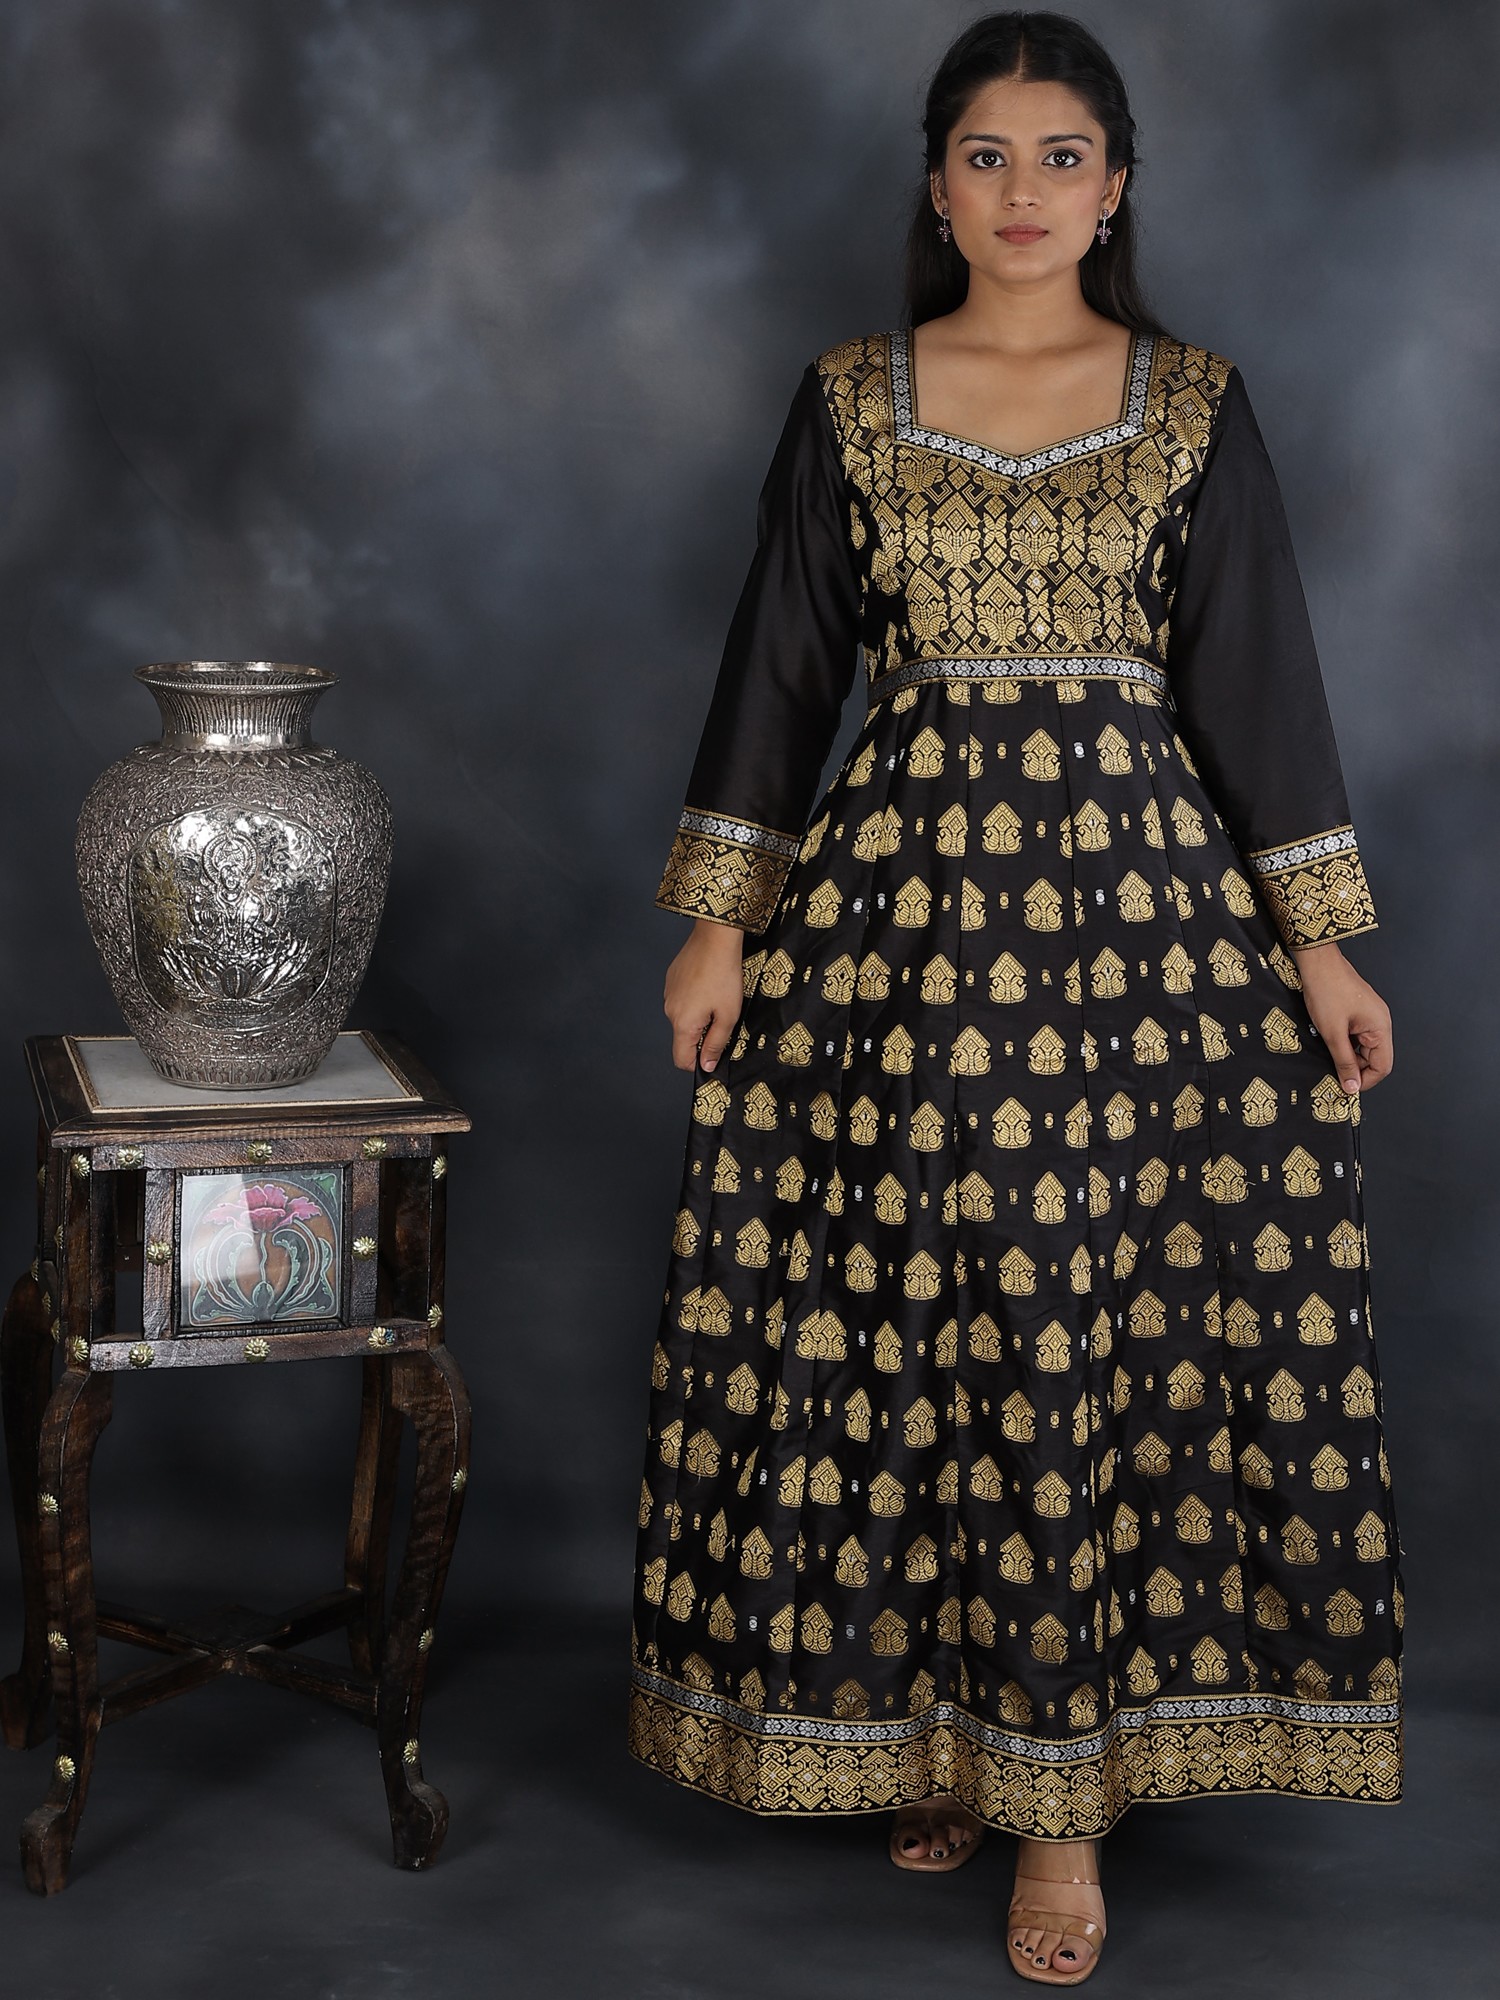 PINK BANDHANI ANARKALI SUIT SET | Anarkali dress pattern, Indian dresses,  Indian fashion